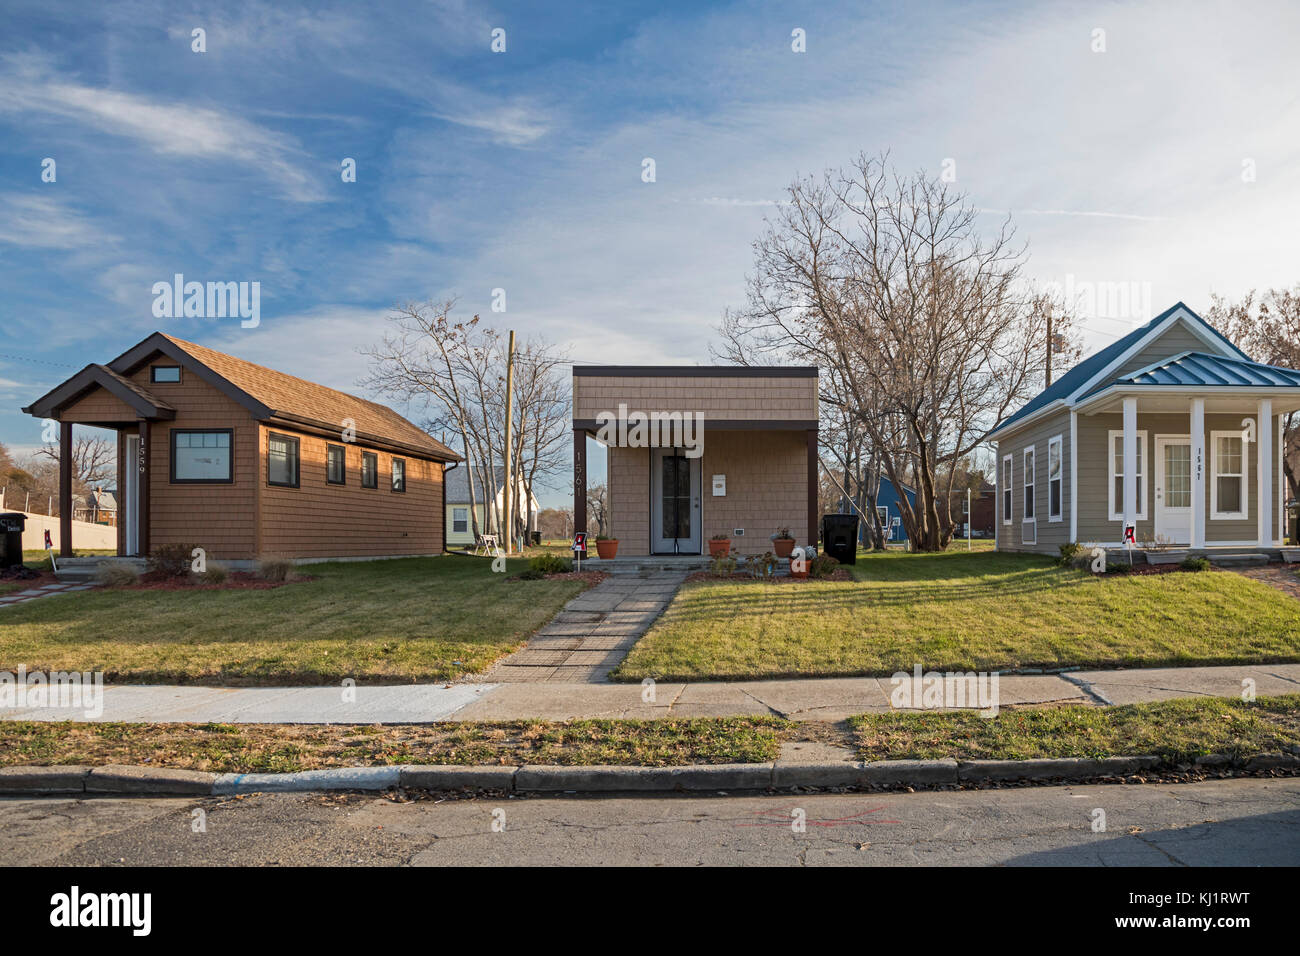 Detroit, Michigan - winzige Häuser, gebaut von Cass Community Social Services für Obdachlose. Die gemeinnützige Organisation plant, eine Gemeinschaft von 25 Stunden aufzubauen Stockfoto